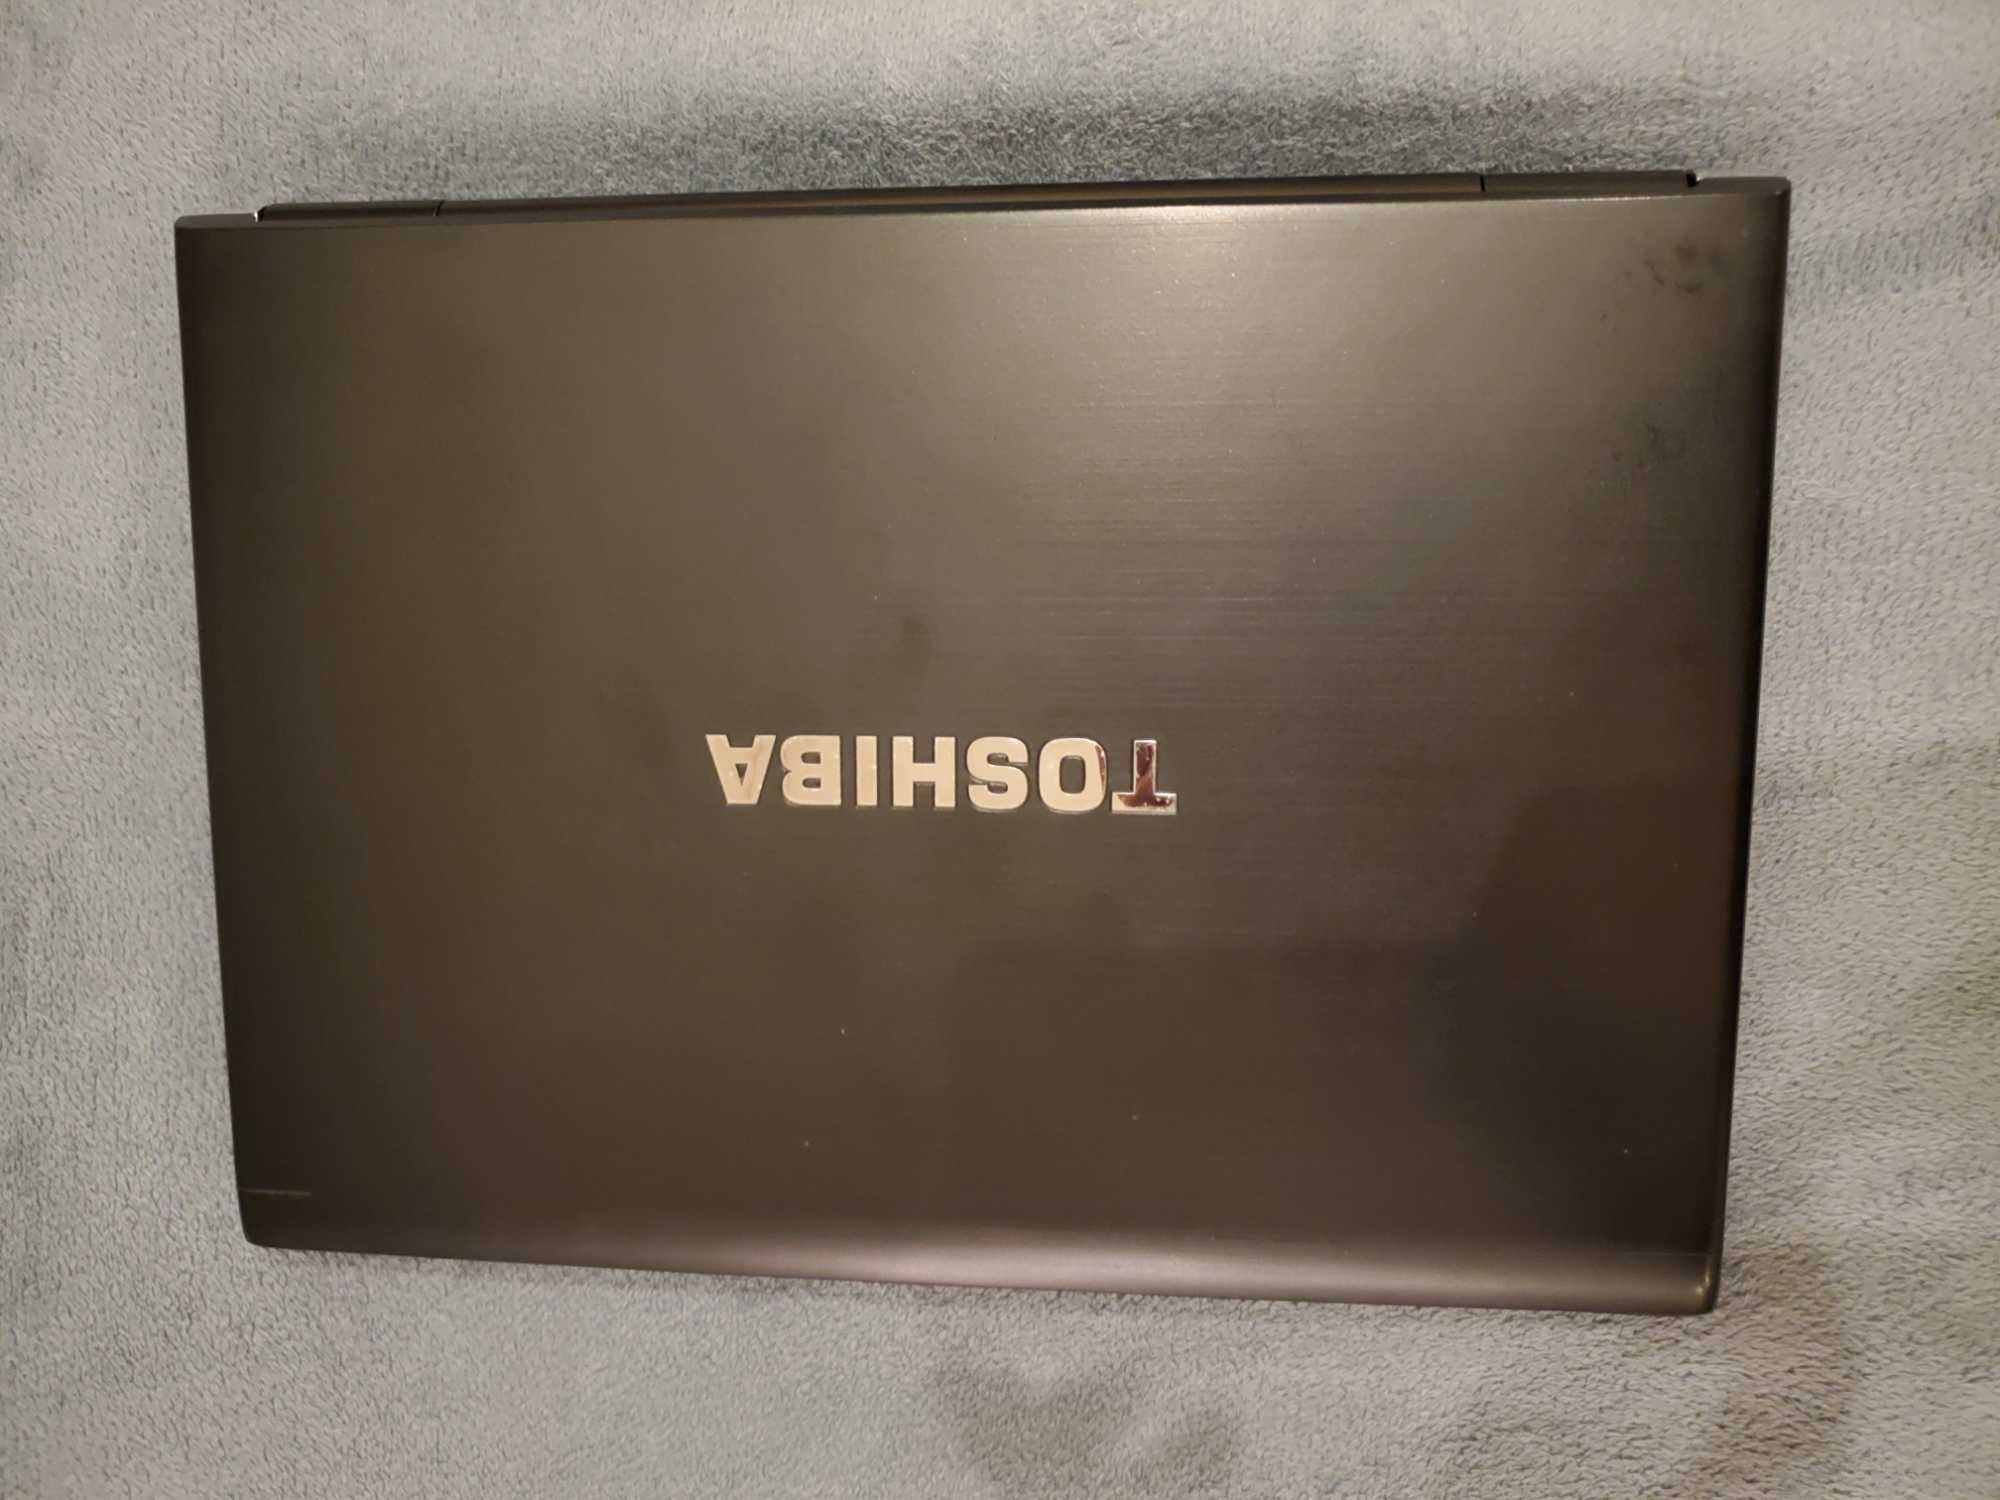 Toshiba Portege R700 (Ecrâ 13,3", Processador i7-620M, 8Gb Ram)